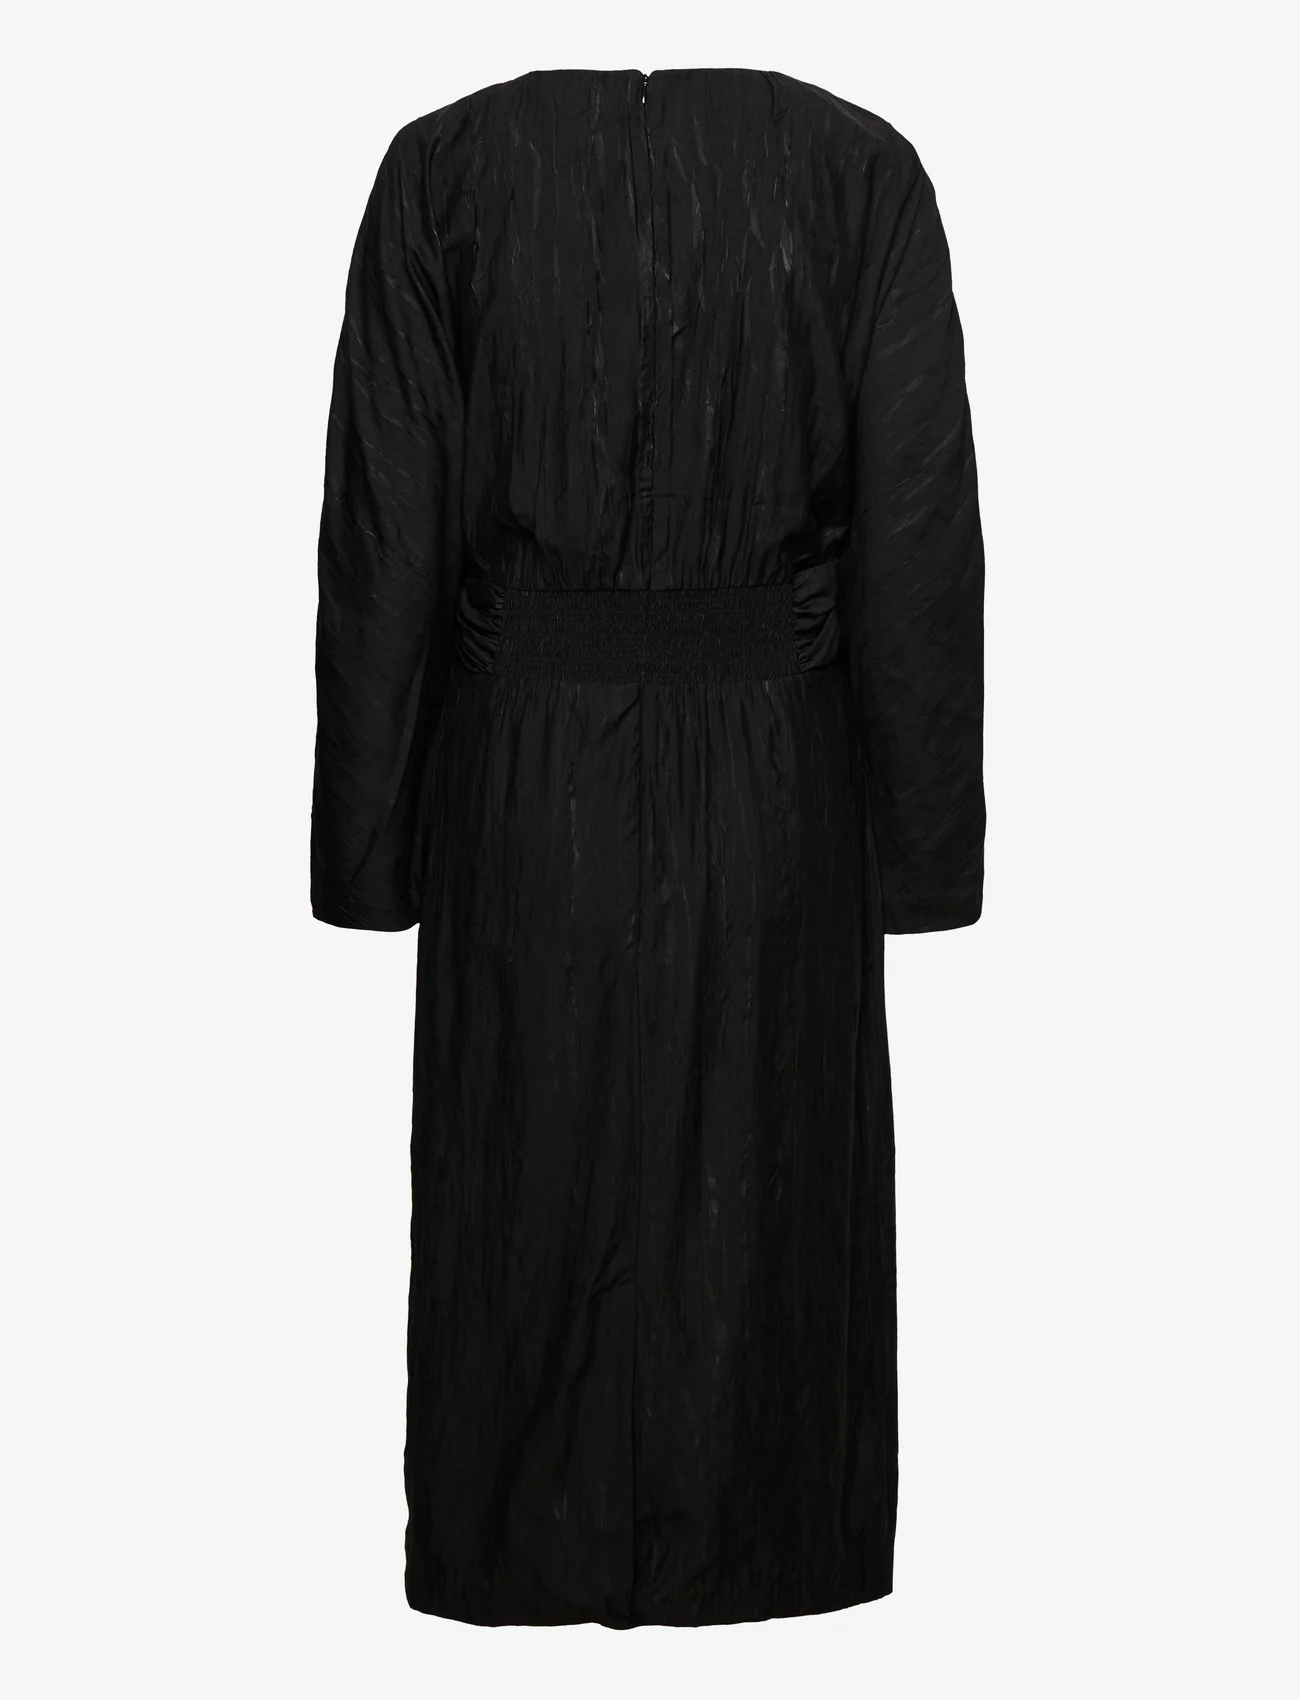 Stylein - MILANA DRESS - midi-jurken - black - 1